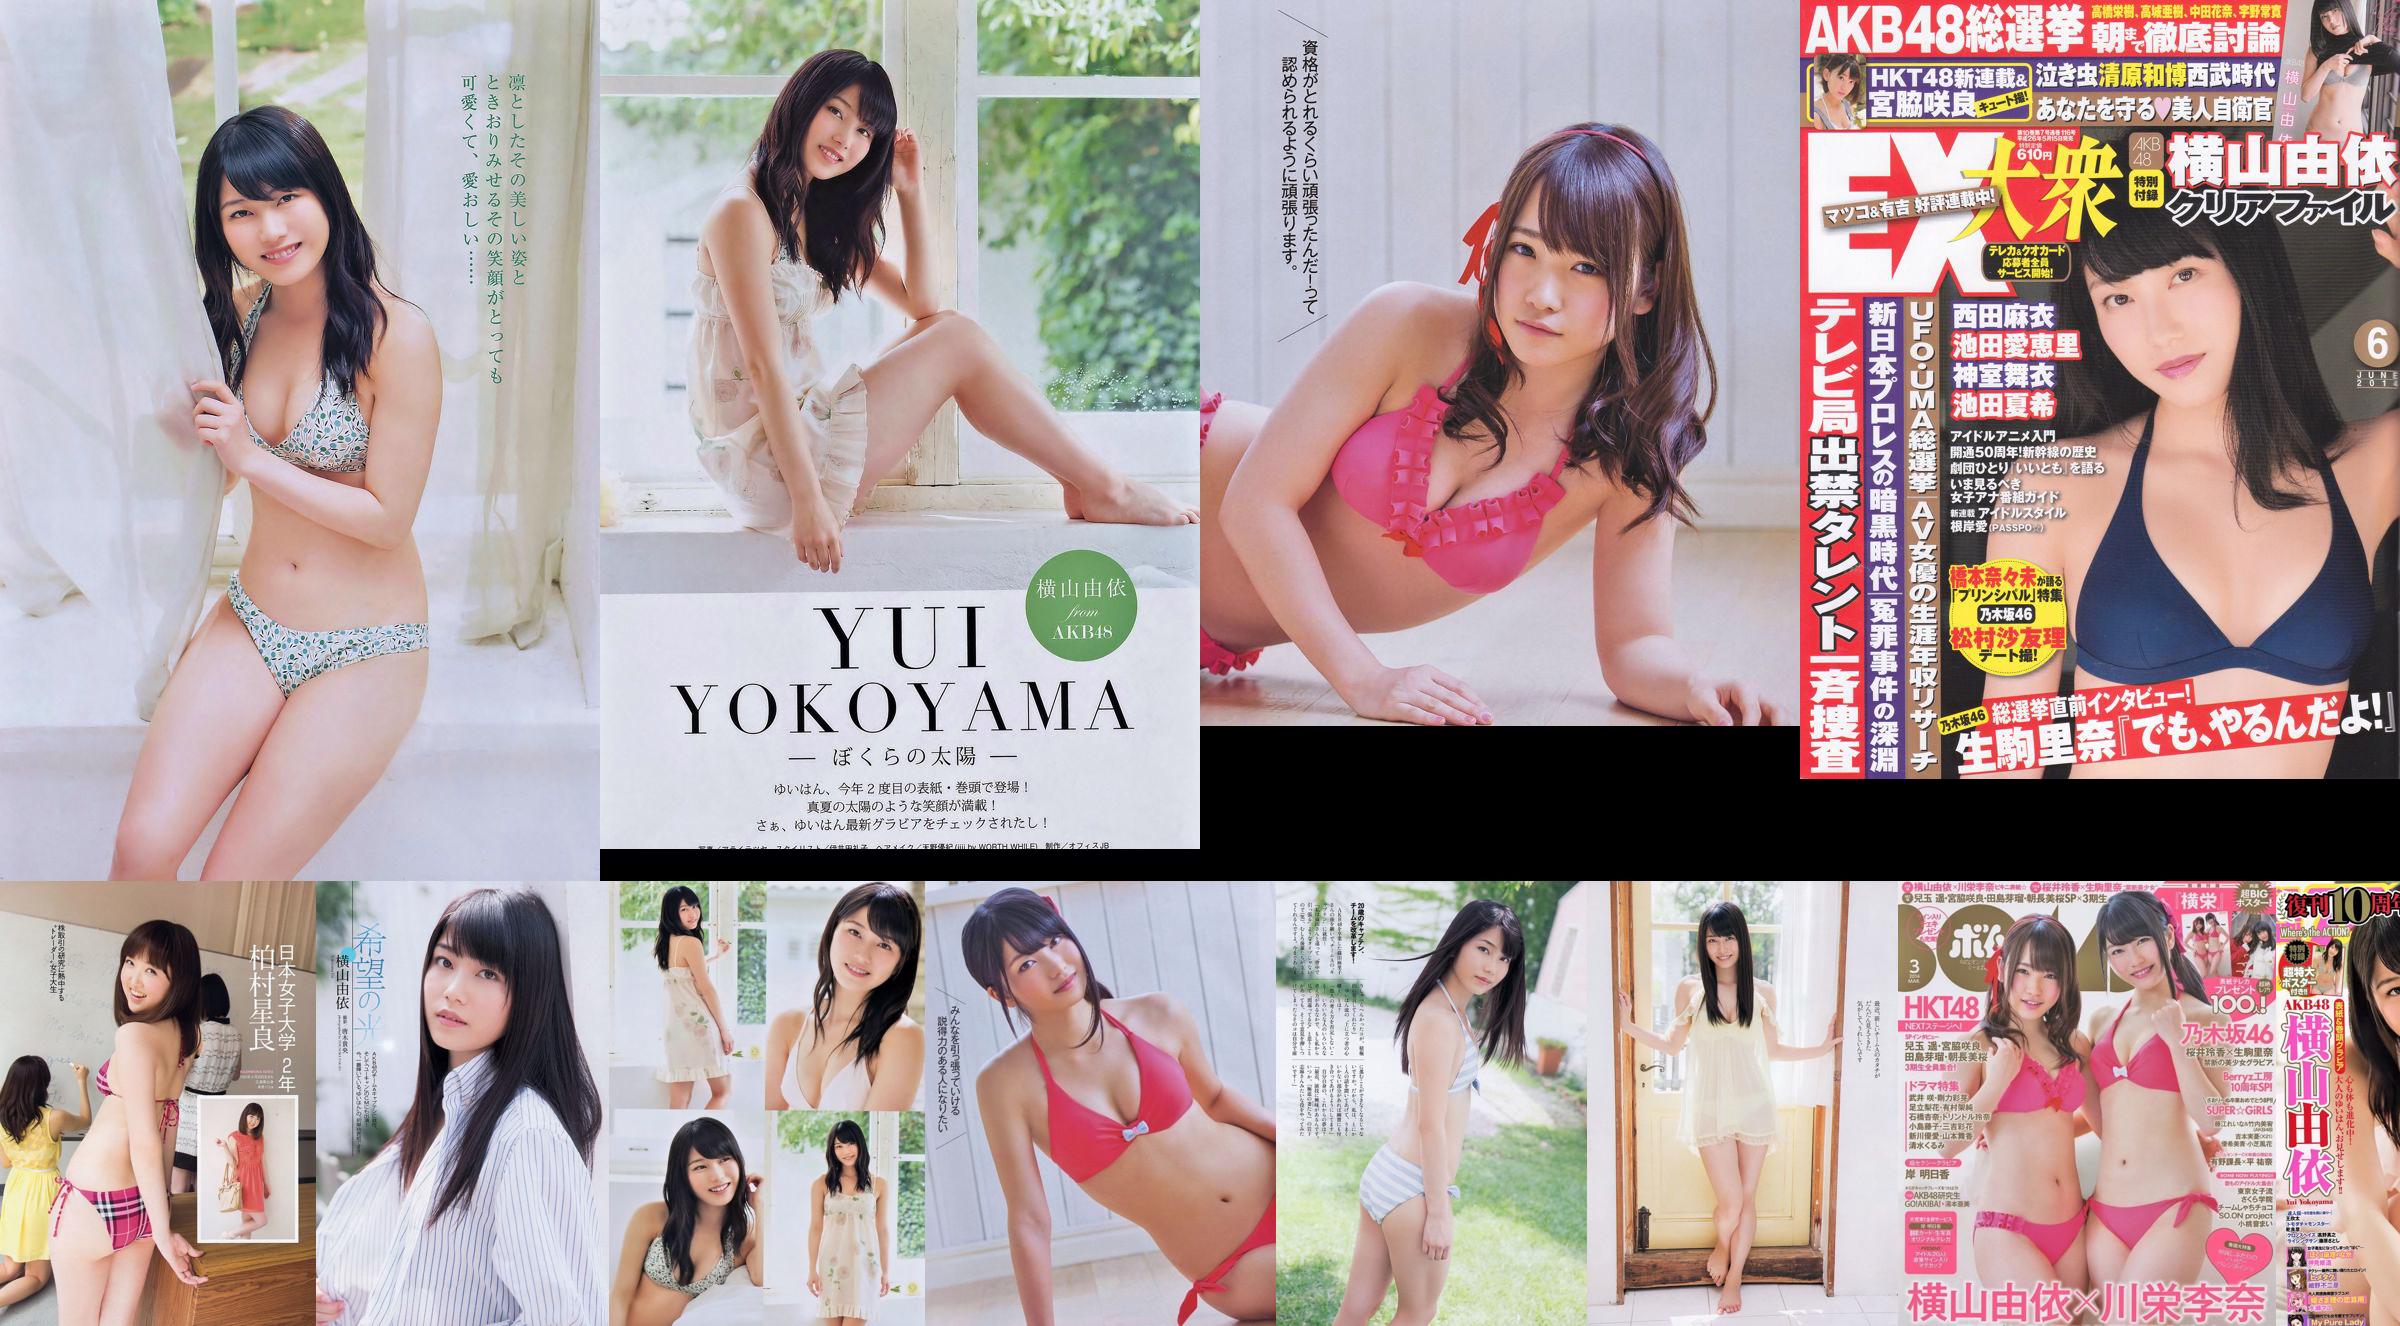 Momoiro Clover Z Yui Yokoyama Yua Shinkawa Mio Uema Anri Sugihara Kumi Yagami [Wekelijkse Playboy] 2013 No.20 Foto Moshi No.ade57e Pagina 1